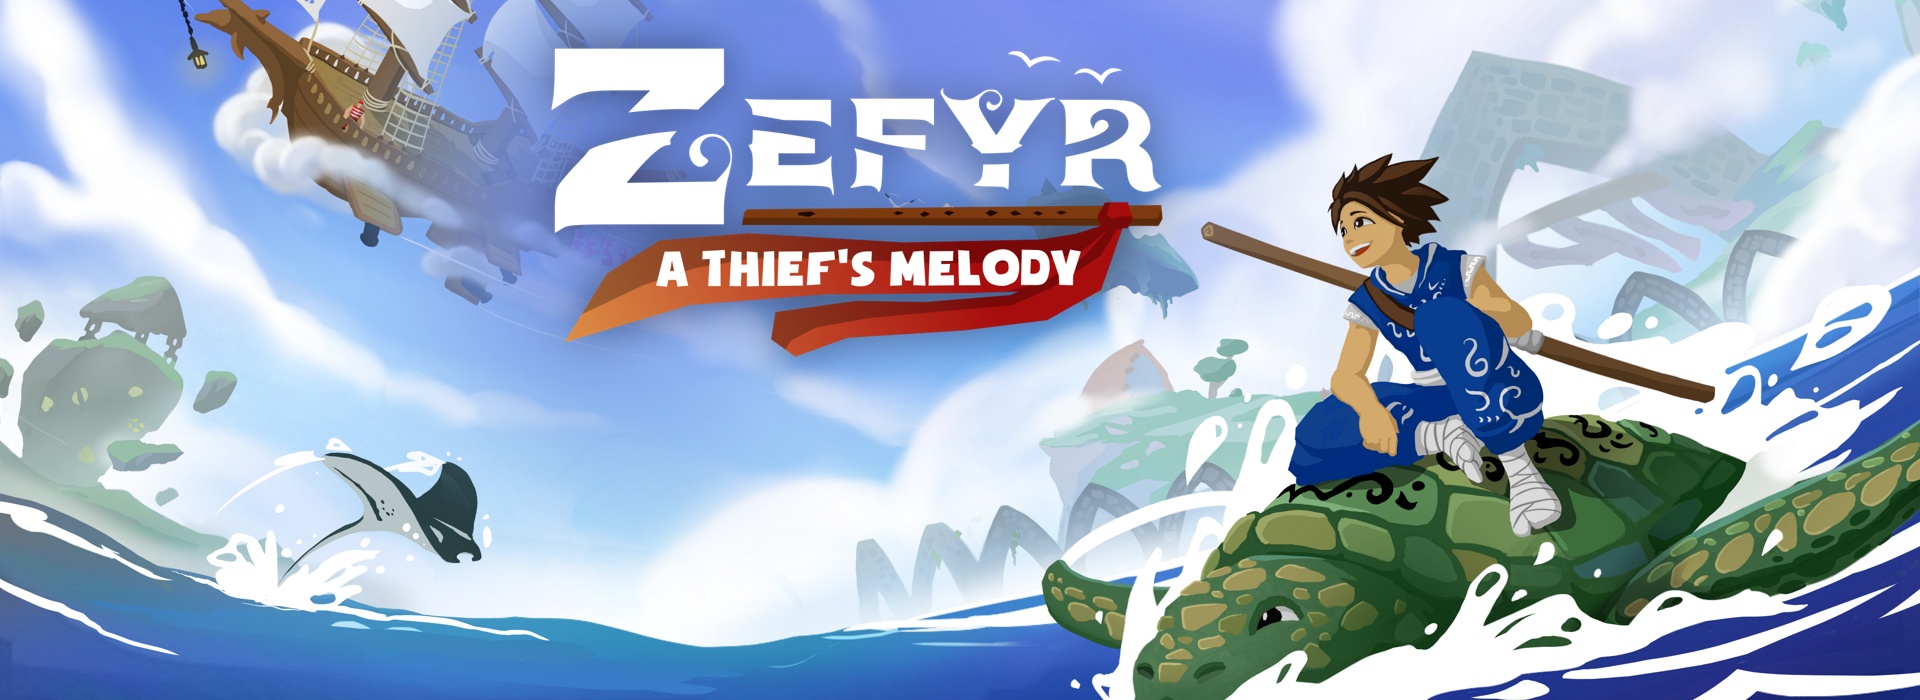 Zefyr: A Thief's Melody